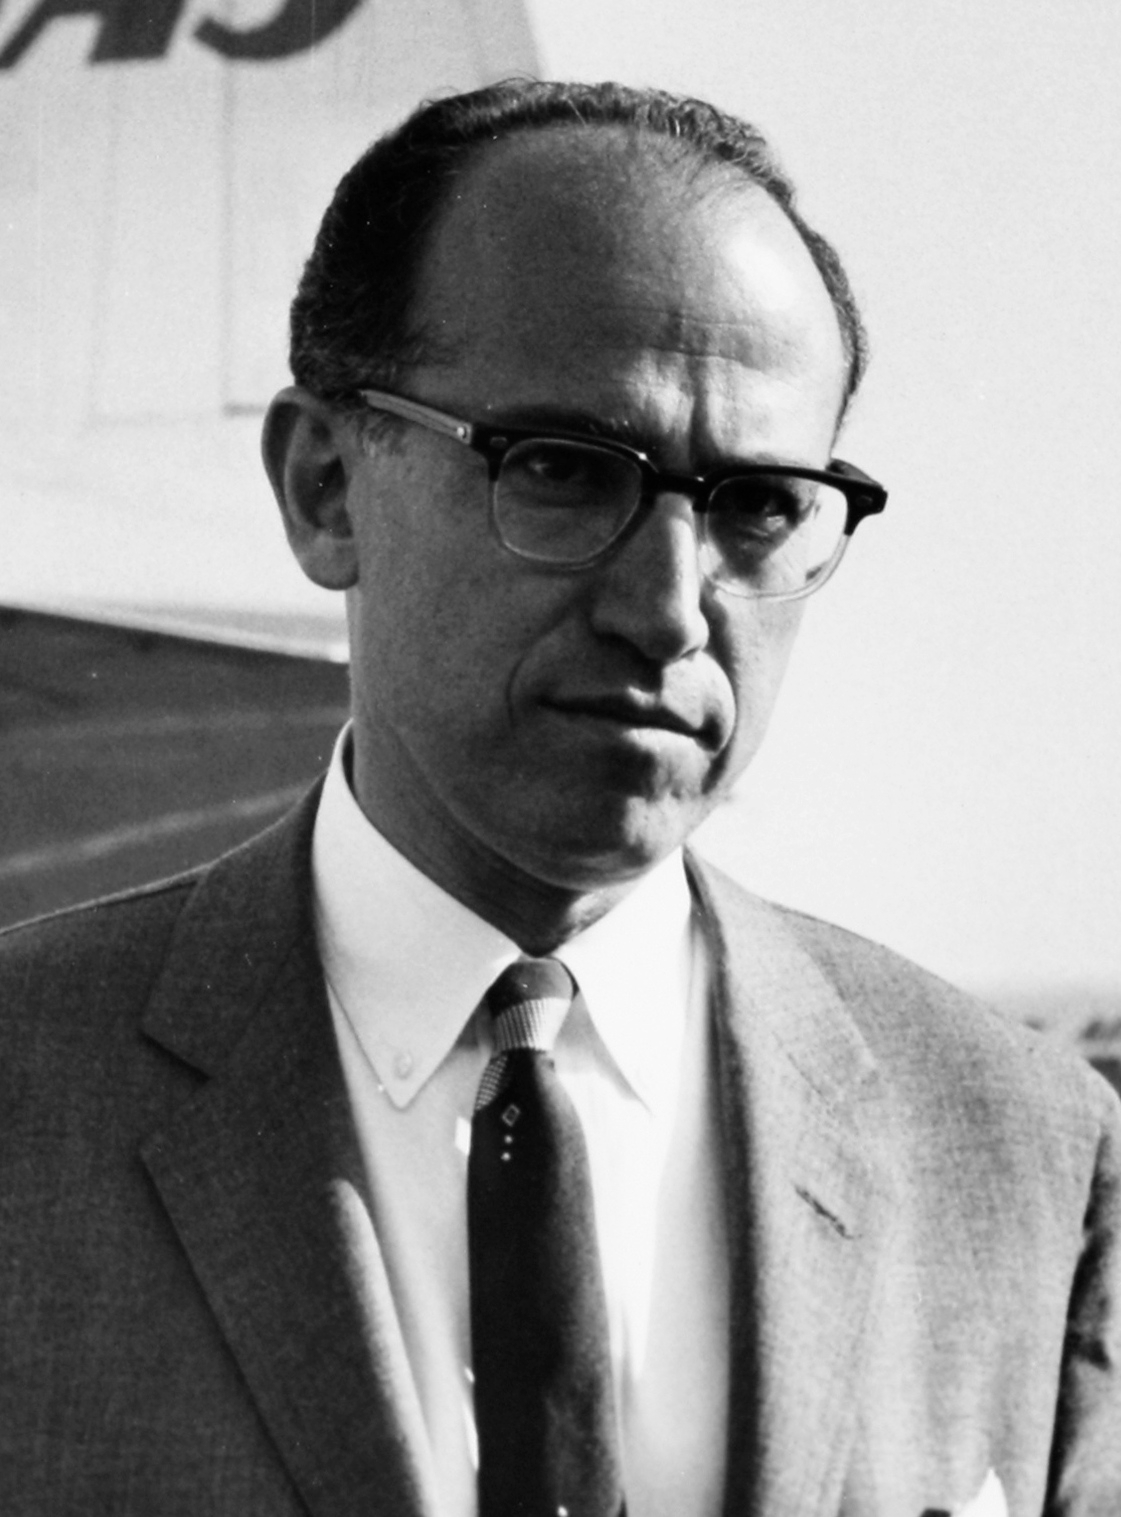 auteur Jonas Salk de la citation Je nous considère comme des partenaires dans tout cela, et que chacun de nous contribue et fait ce qu'il peut faire le mieux. Et donc je ne vois pas un échelon supérieur et un échelon inférieur - je vois tout cela horizontalement - et je le vois comme faisant partie d'une matrice. Et je vois que chaque être humain a un but, un destin, si vous le souhaitez - le destin qui existe en chacun de nous - et trouvez des moyens et moyens de fournir de telles opportunités à tout le monde.